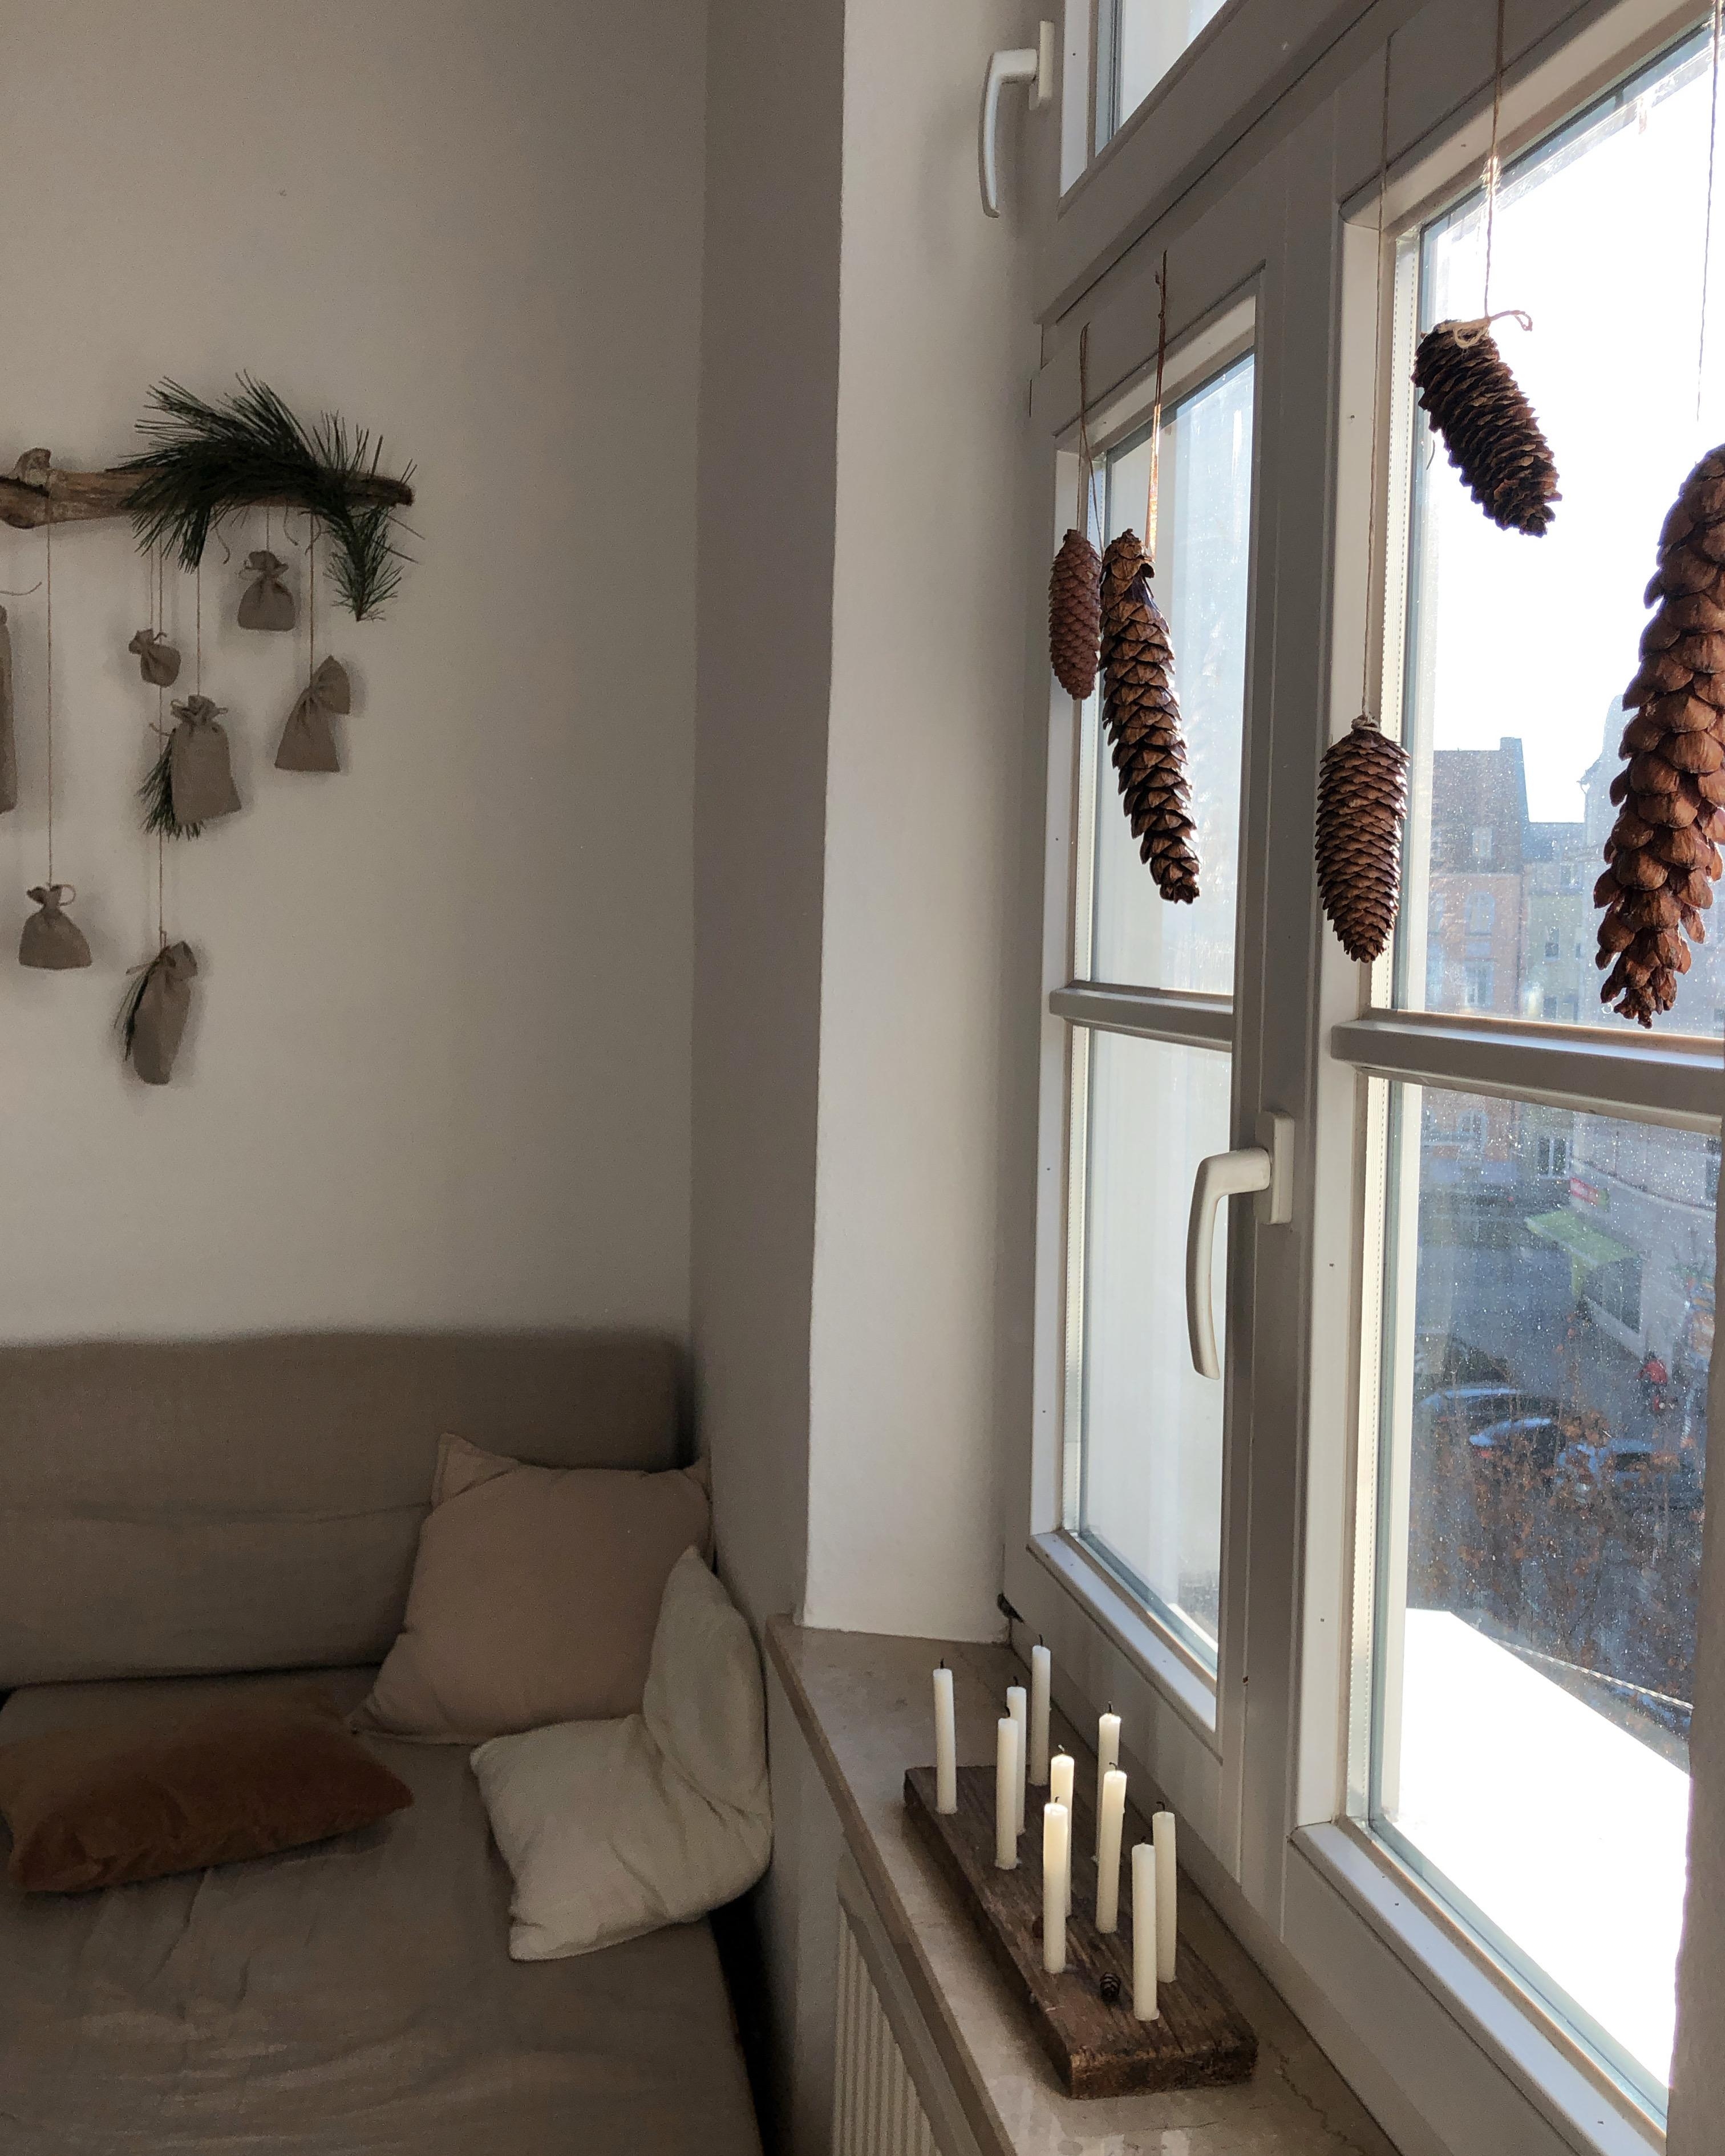 Guten Morgen 👋🏼 #wohnzimmer #dekoideen #minimalistisch #kerzenbrett #adventskalender